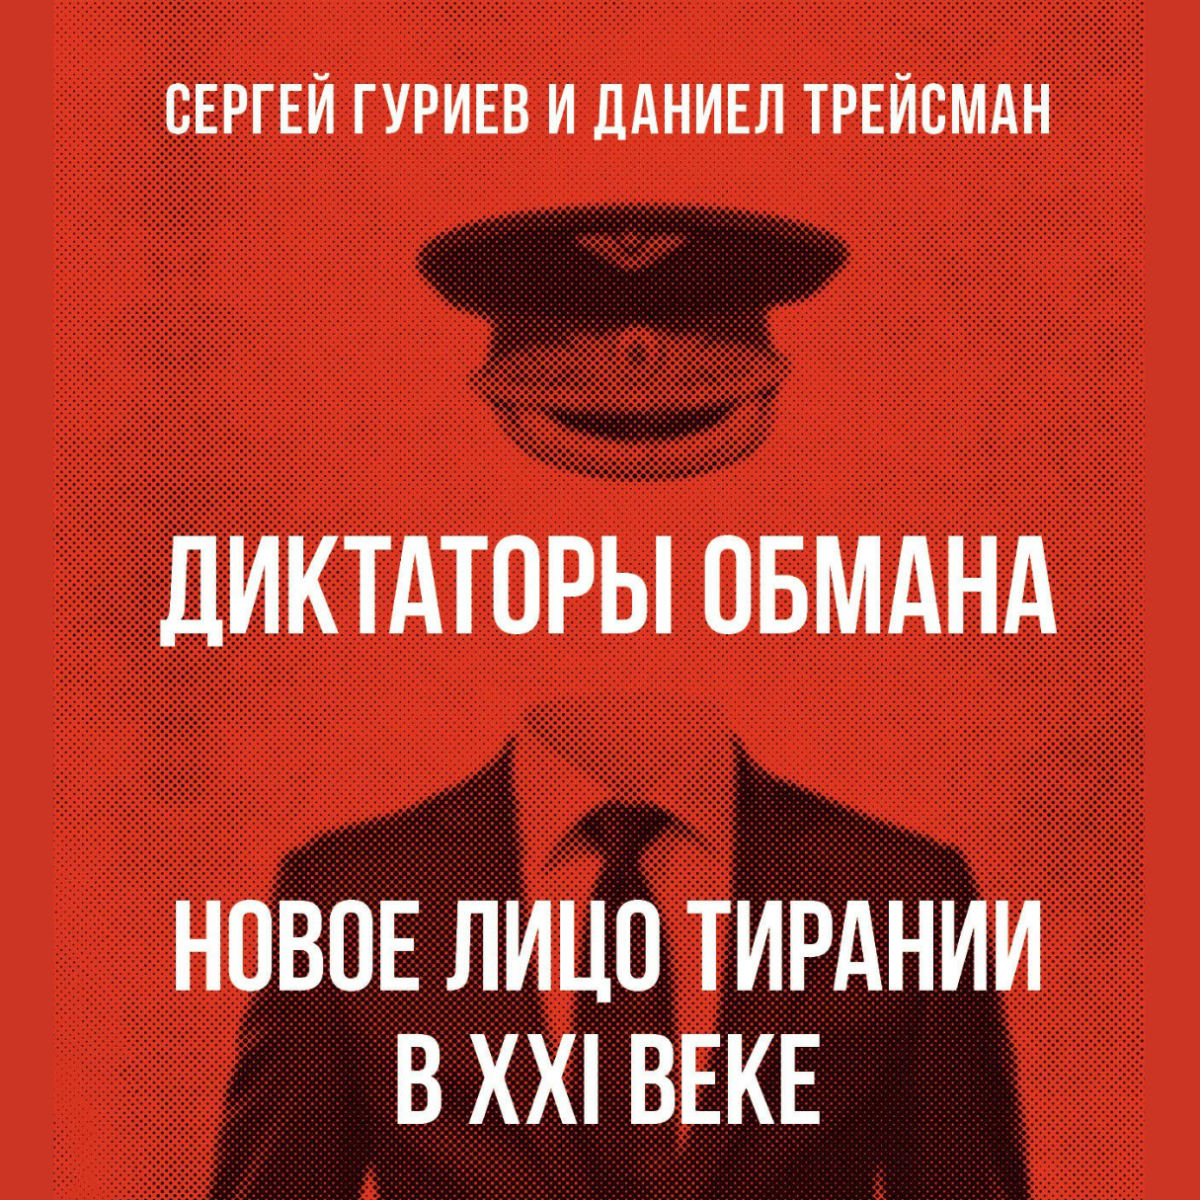 Фонд Немцова издал русскоязычную версию книги Сергея Гуриева и Даниела Трейсмана «Диктаторы обмана»